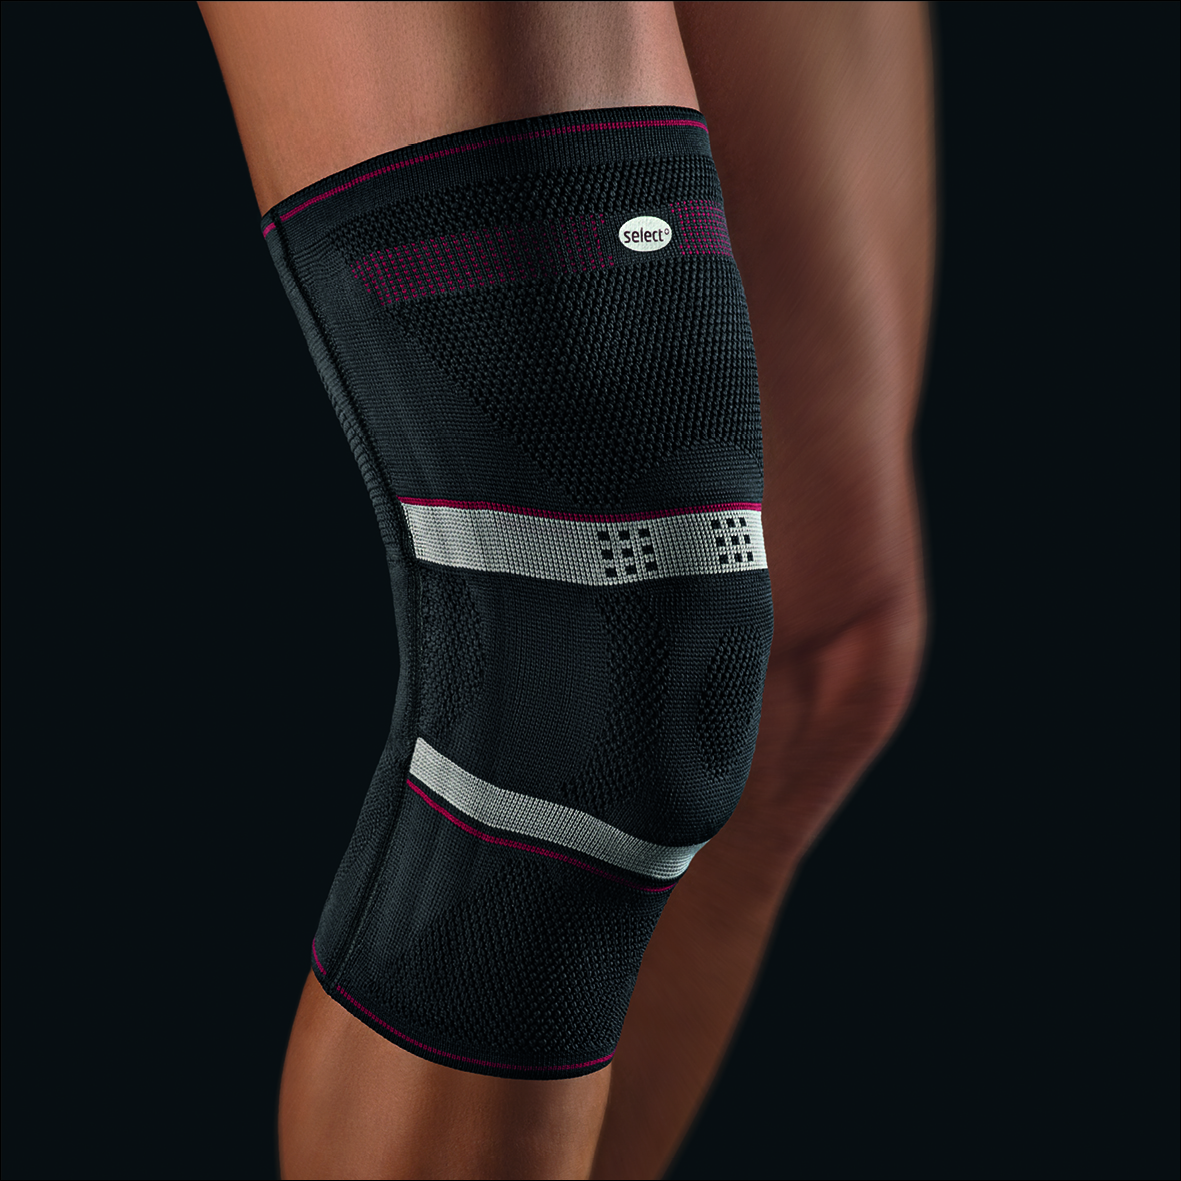 Bort select StabiloGen Kniebandage Bandage mit antibakterieller Ausrüstung unter Kniebandagen > Bort